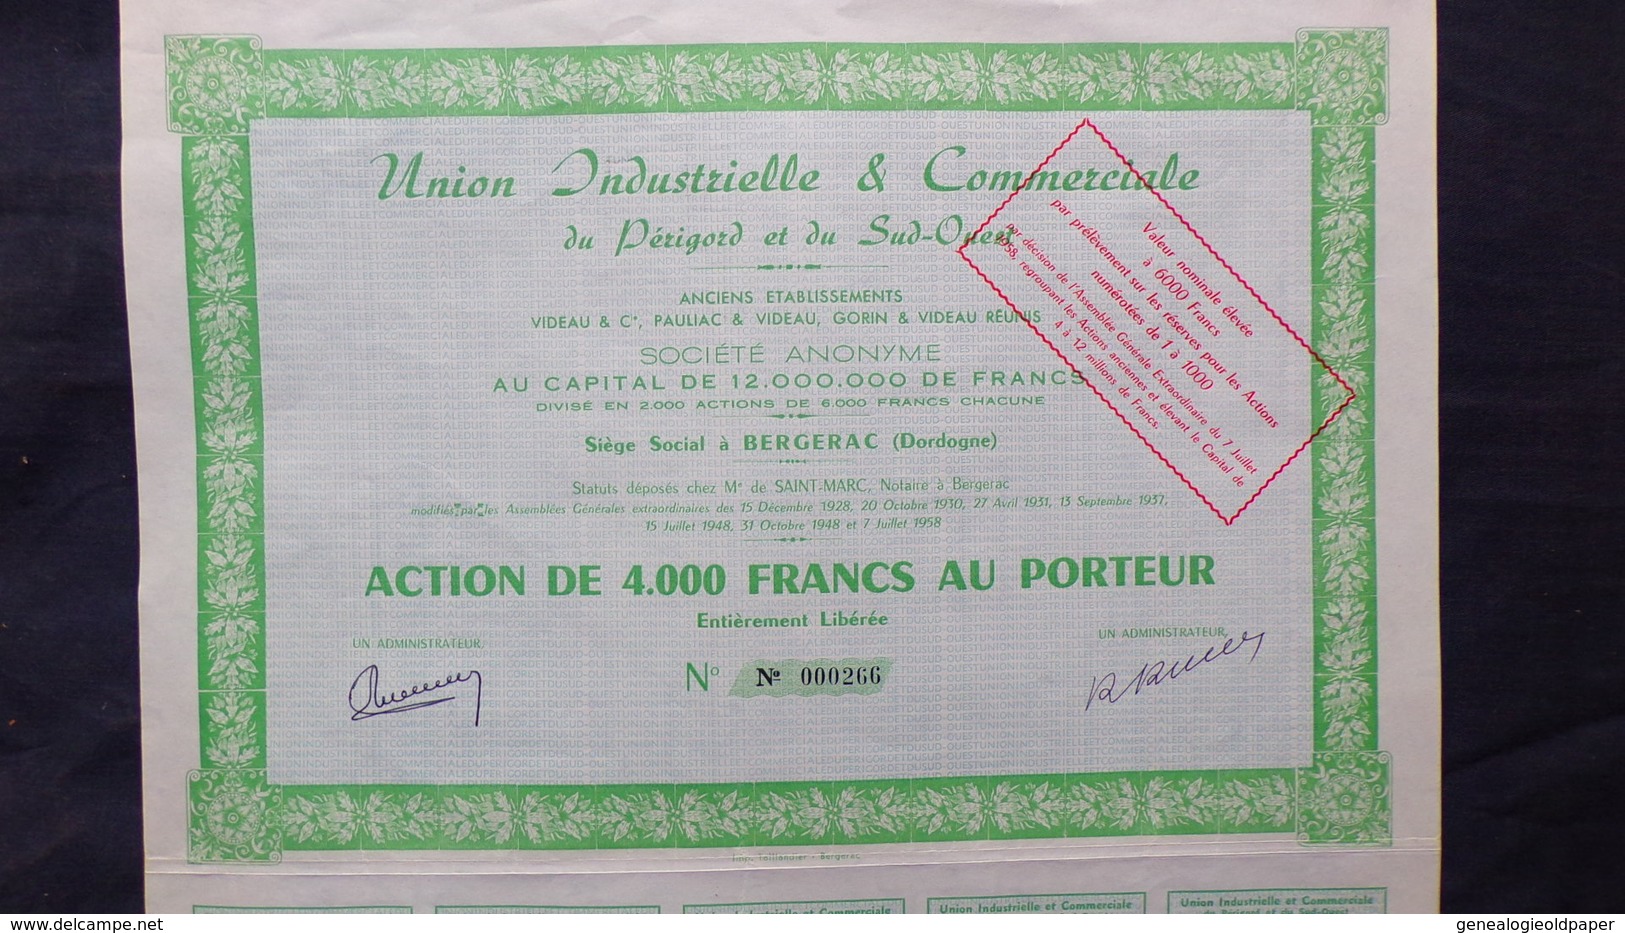 24- BERGERAC- RARE ACTION DE 4000 FRANCS AU PORTEUR-UNION INDUSTRIELLE COMMERCIALE DU PRIGORD -VIDEAU-PAULIAC-GORIN-1928 - Industrie